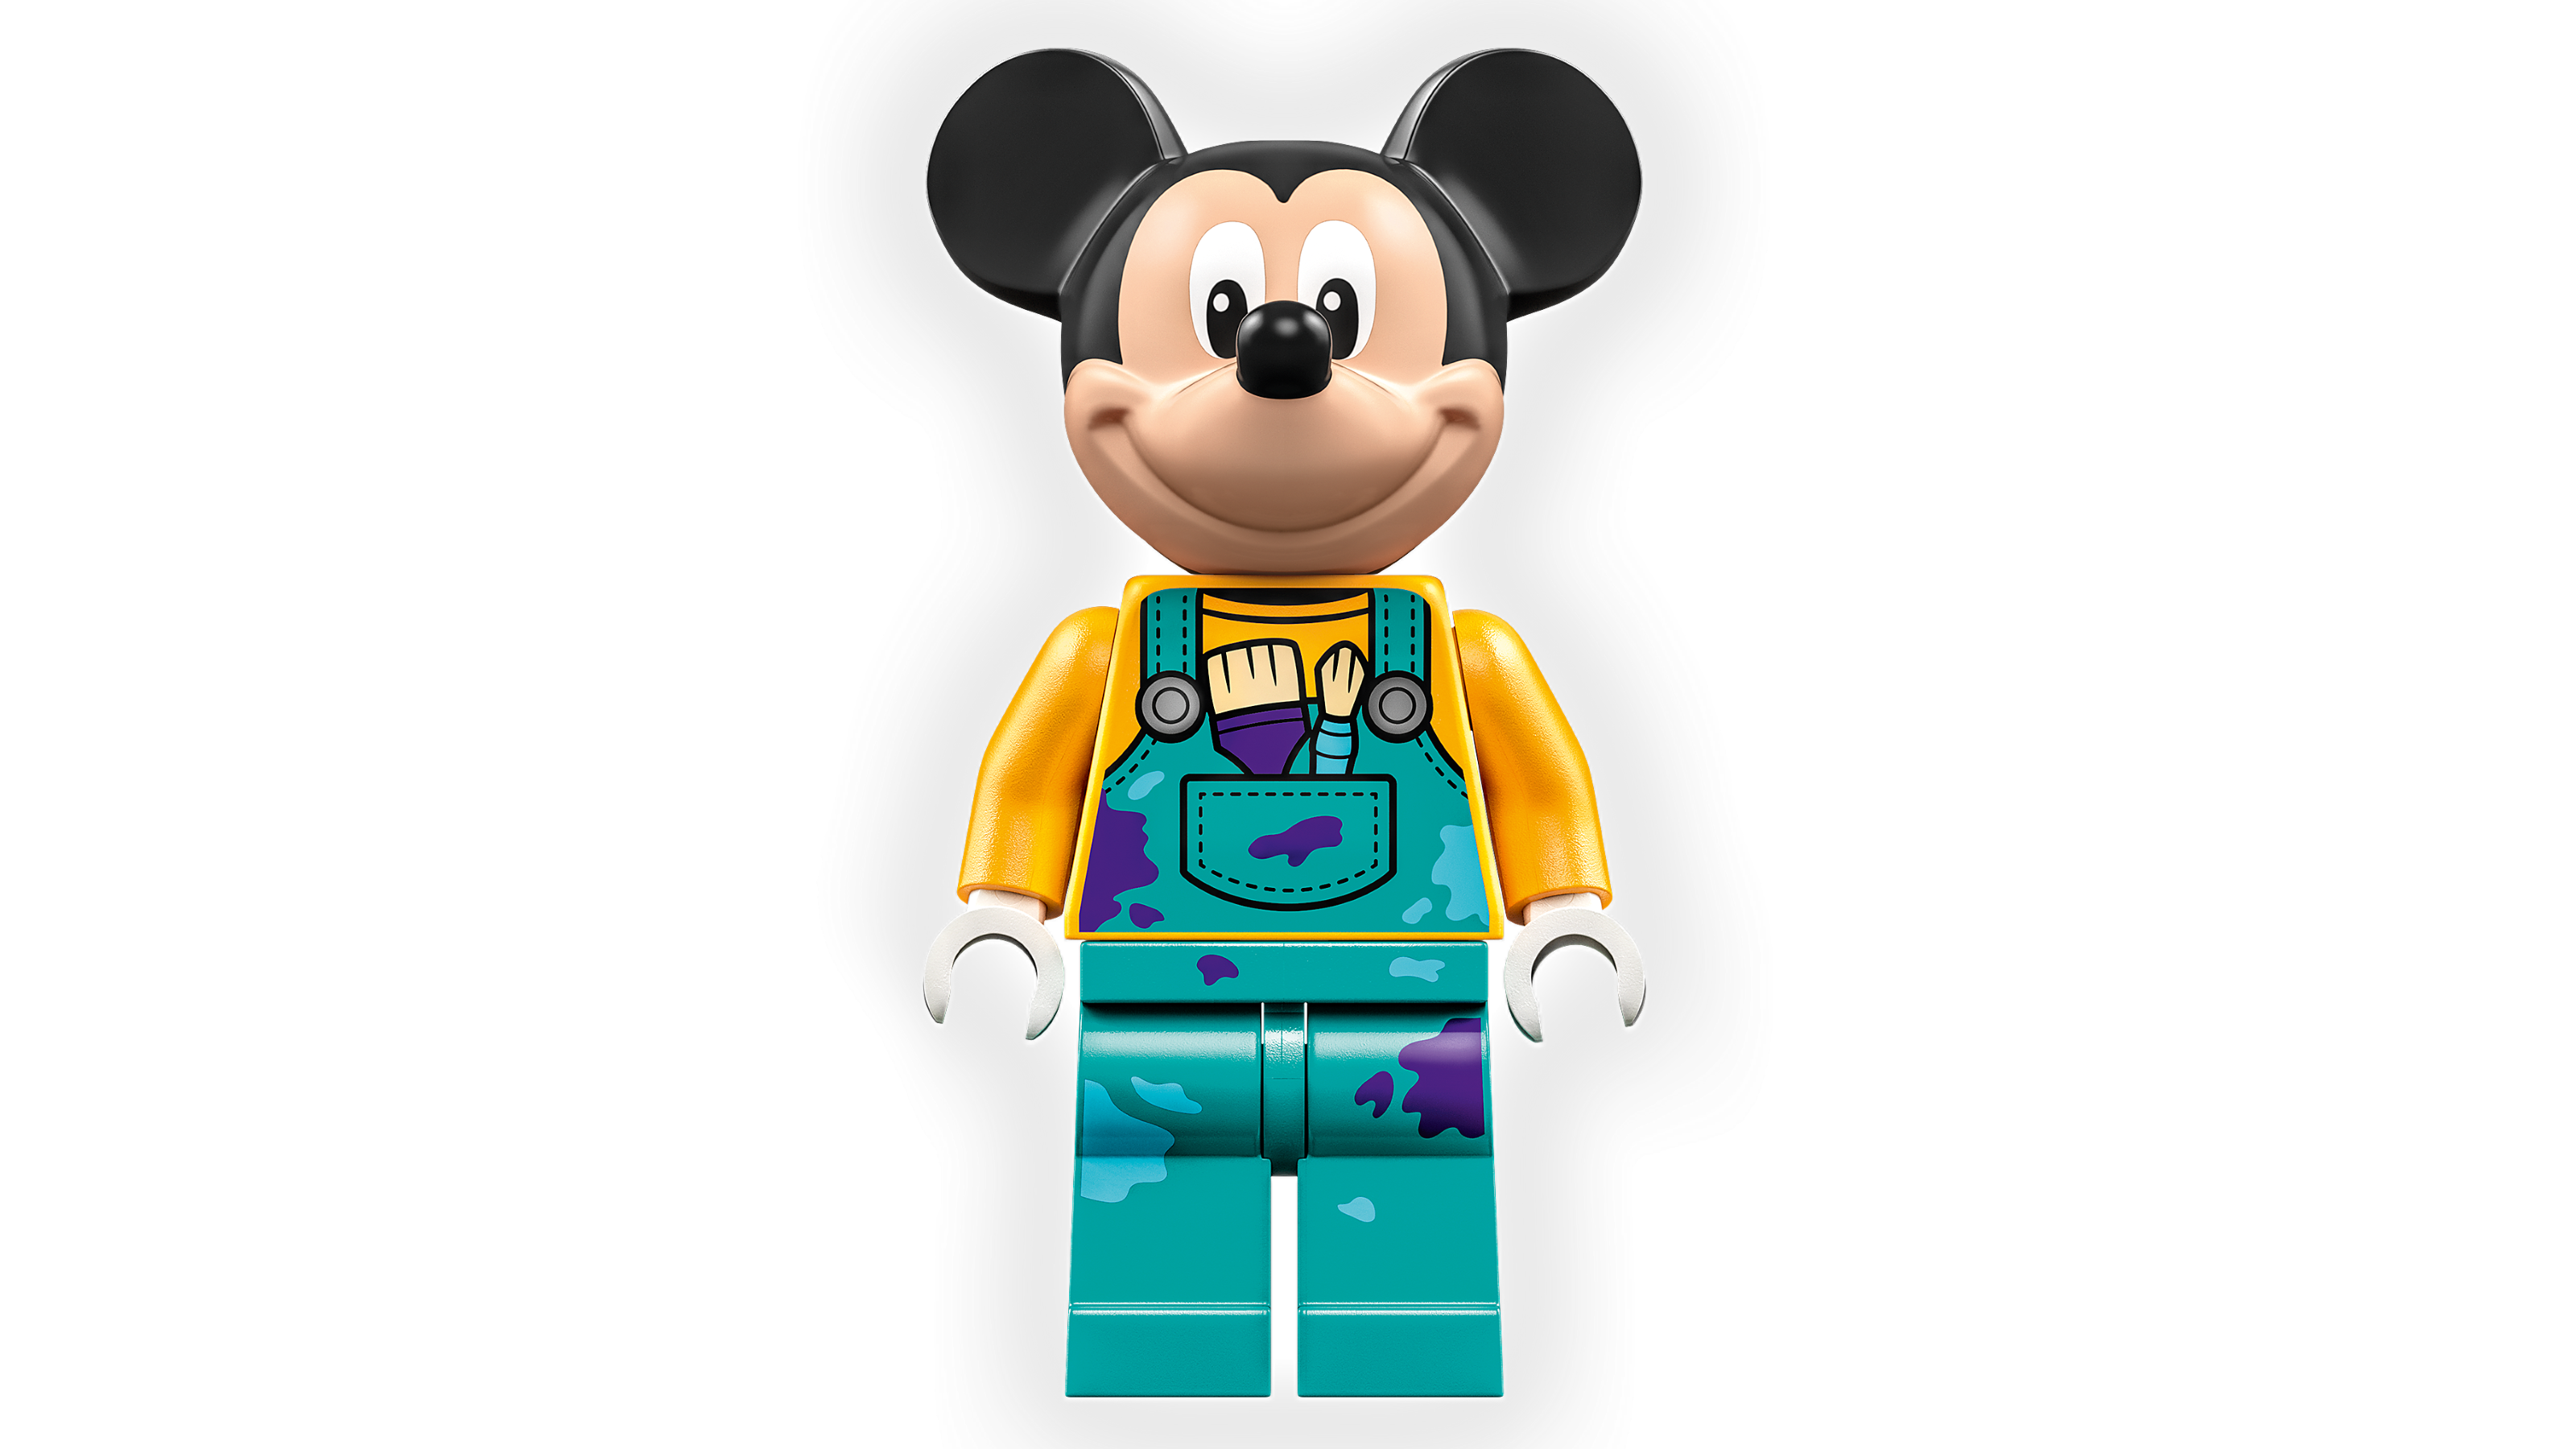 Lego Disney 100 Years Of Disney Animation Icons Disney Celebration Set  43221 : Target